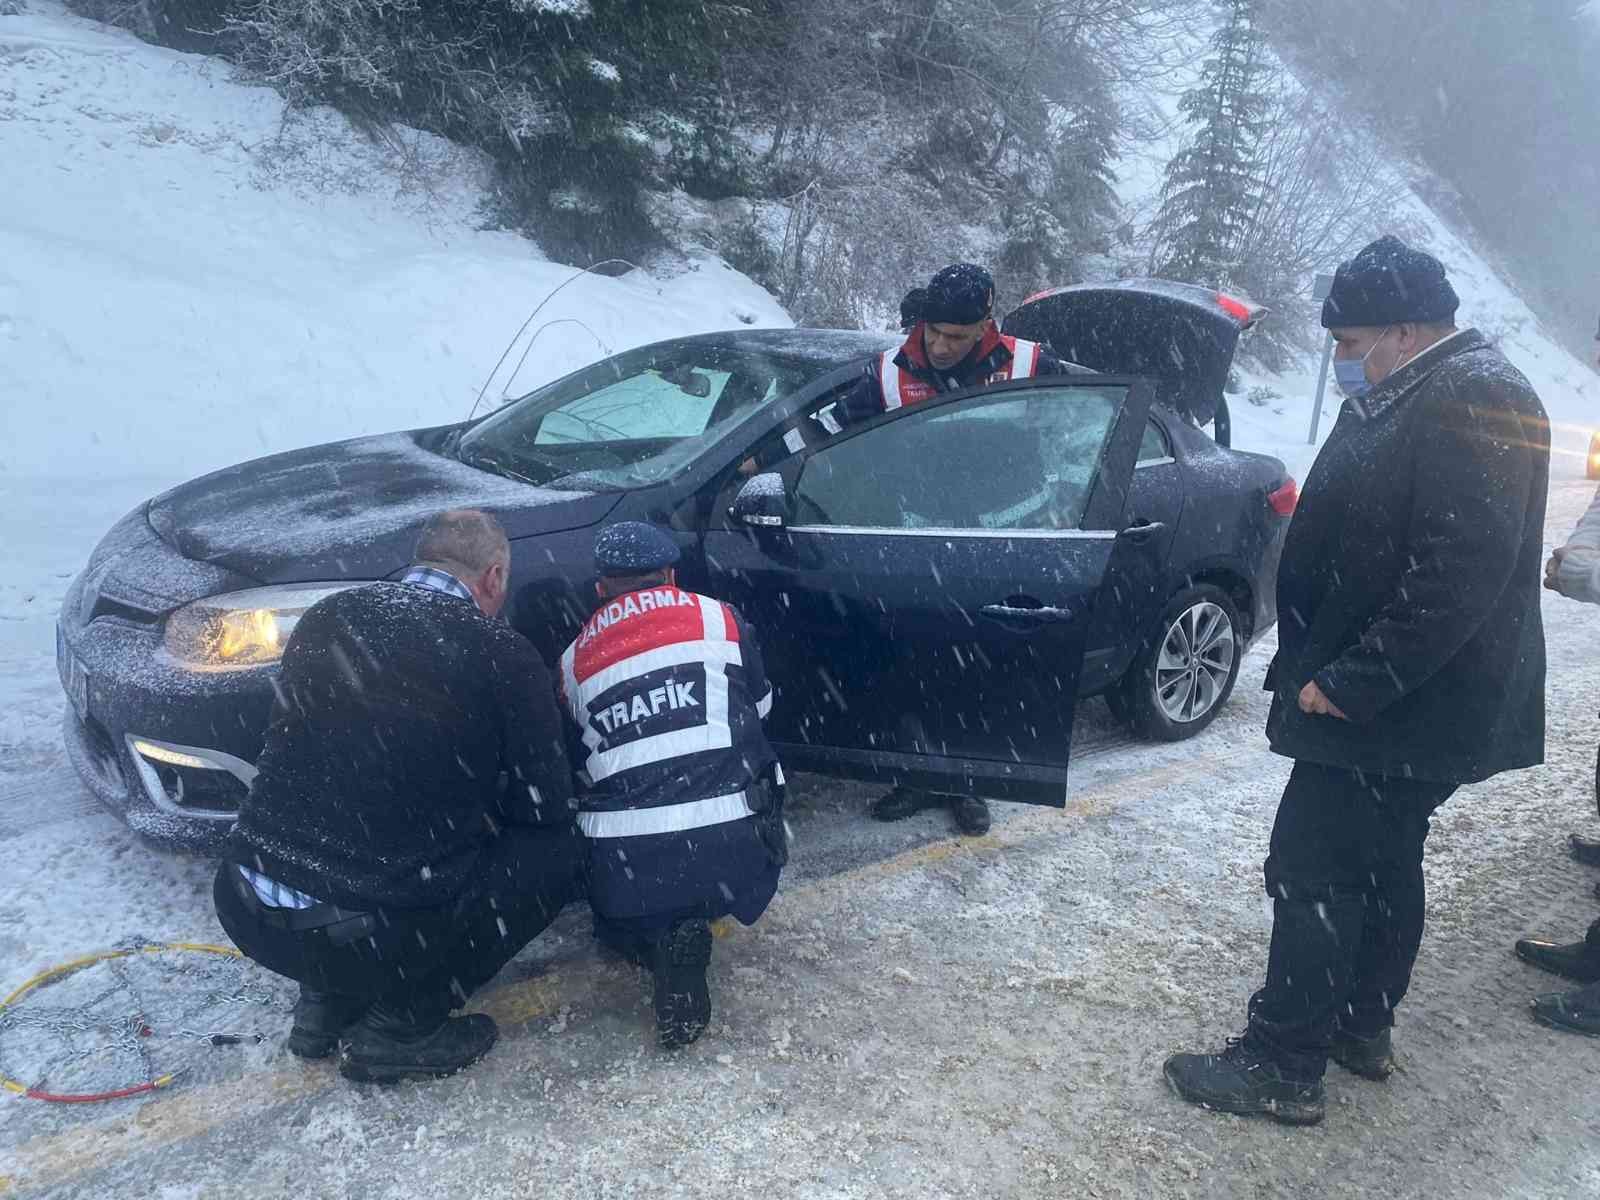 Karlı yolda kalan araçları jandarma ekipleri kurtardı #kastamonu